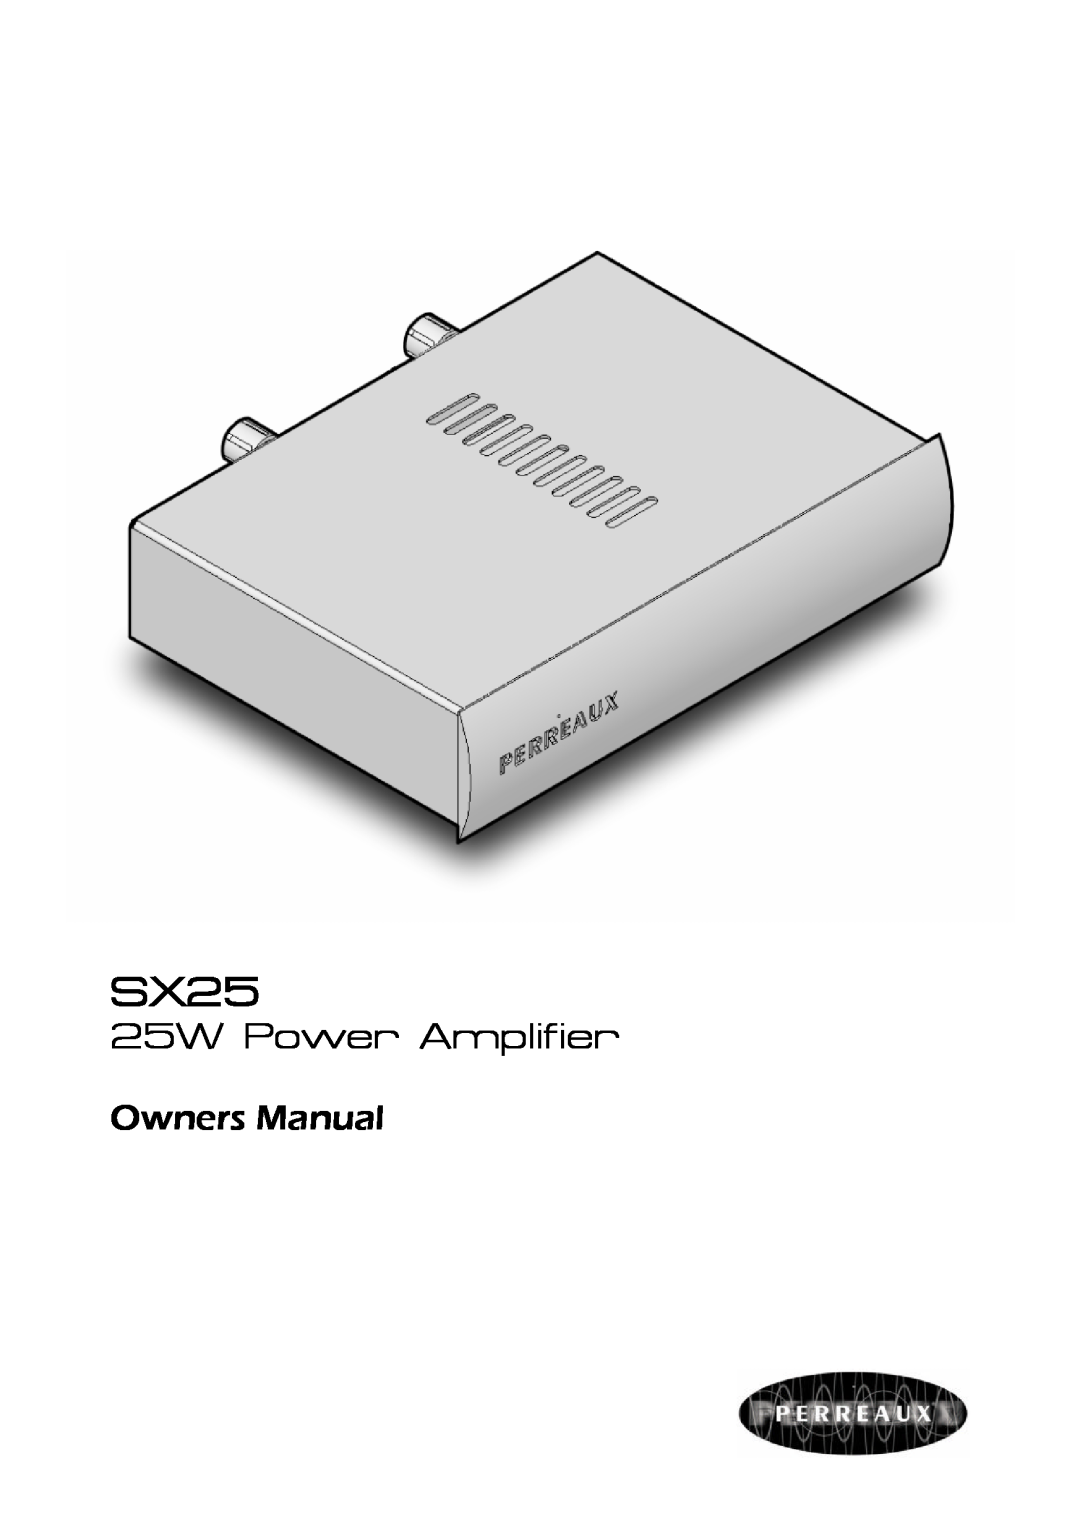 Perreaux SX25 owner manual 25W Power Amplifier 